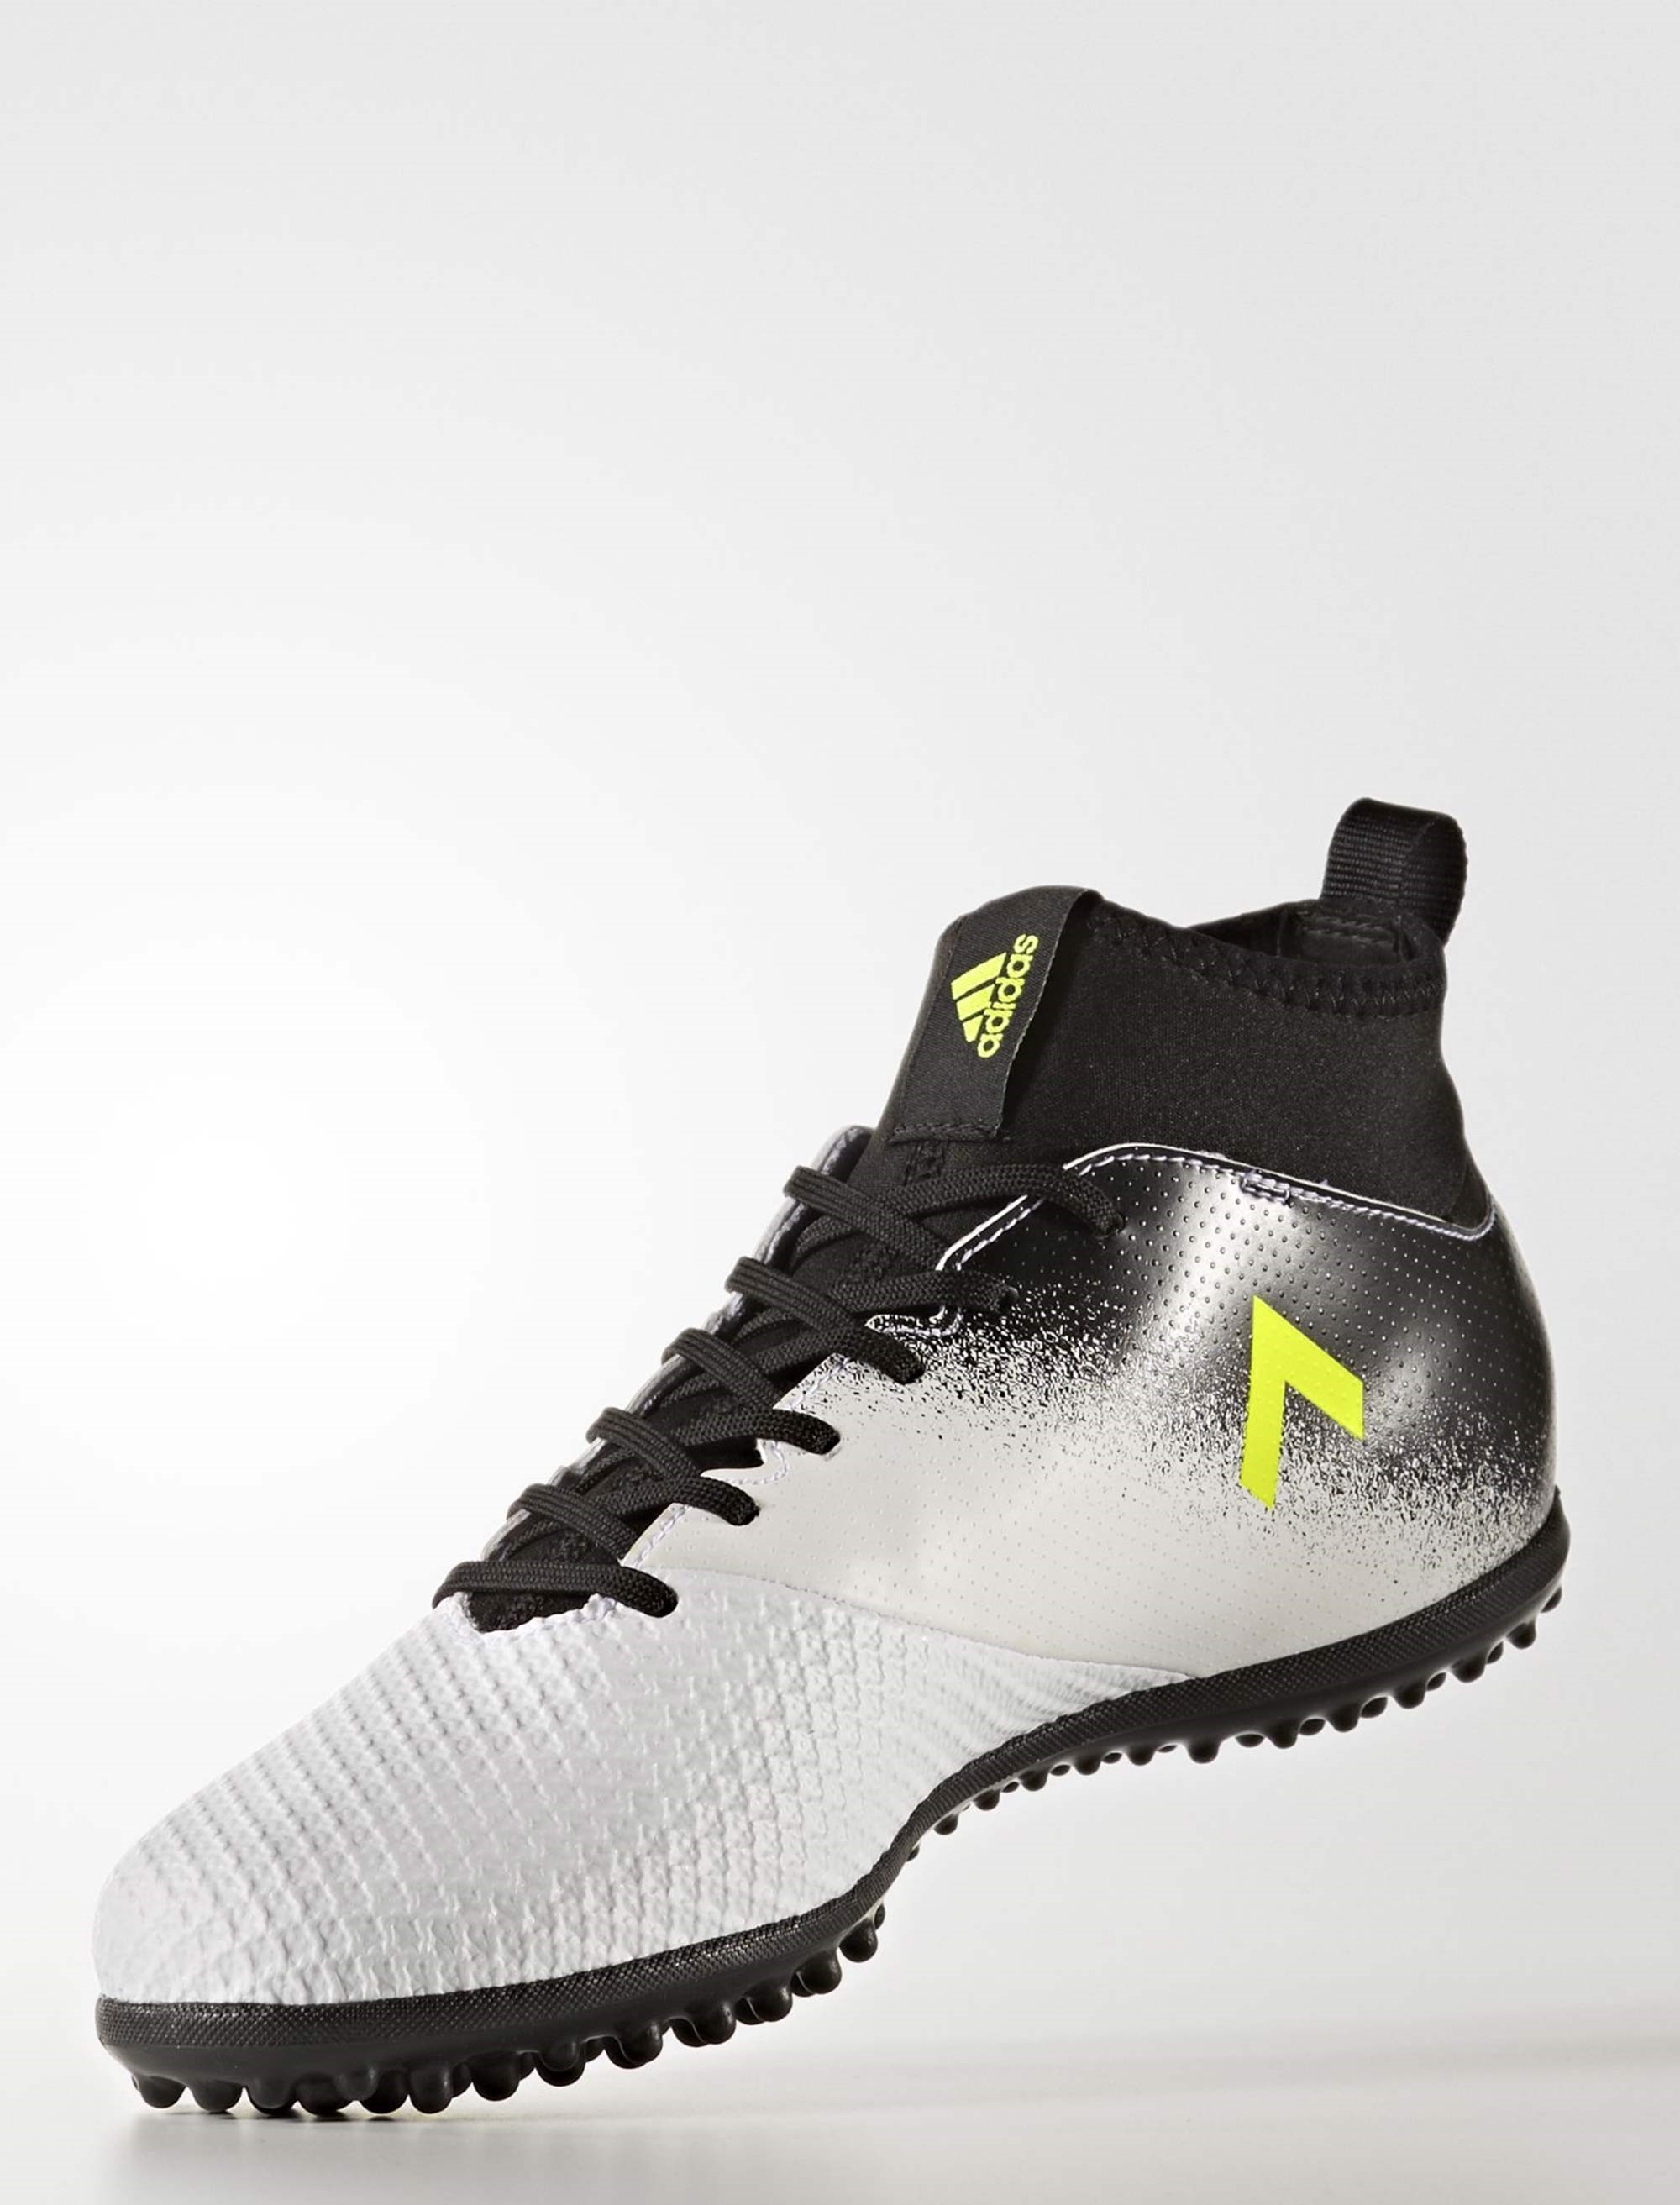 مشخصات، قیمت و خرید کفش مخصوص فوتبال مردانه آدیداس مدل ACE Tango 17-3 TF |  دیجی\u200cکالا